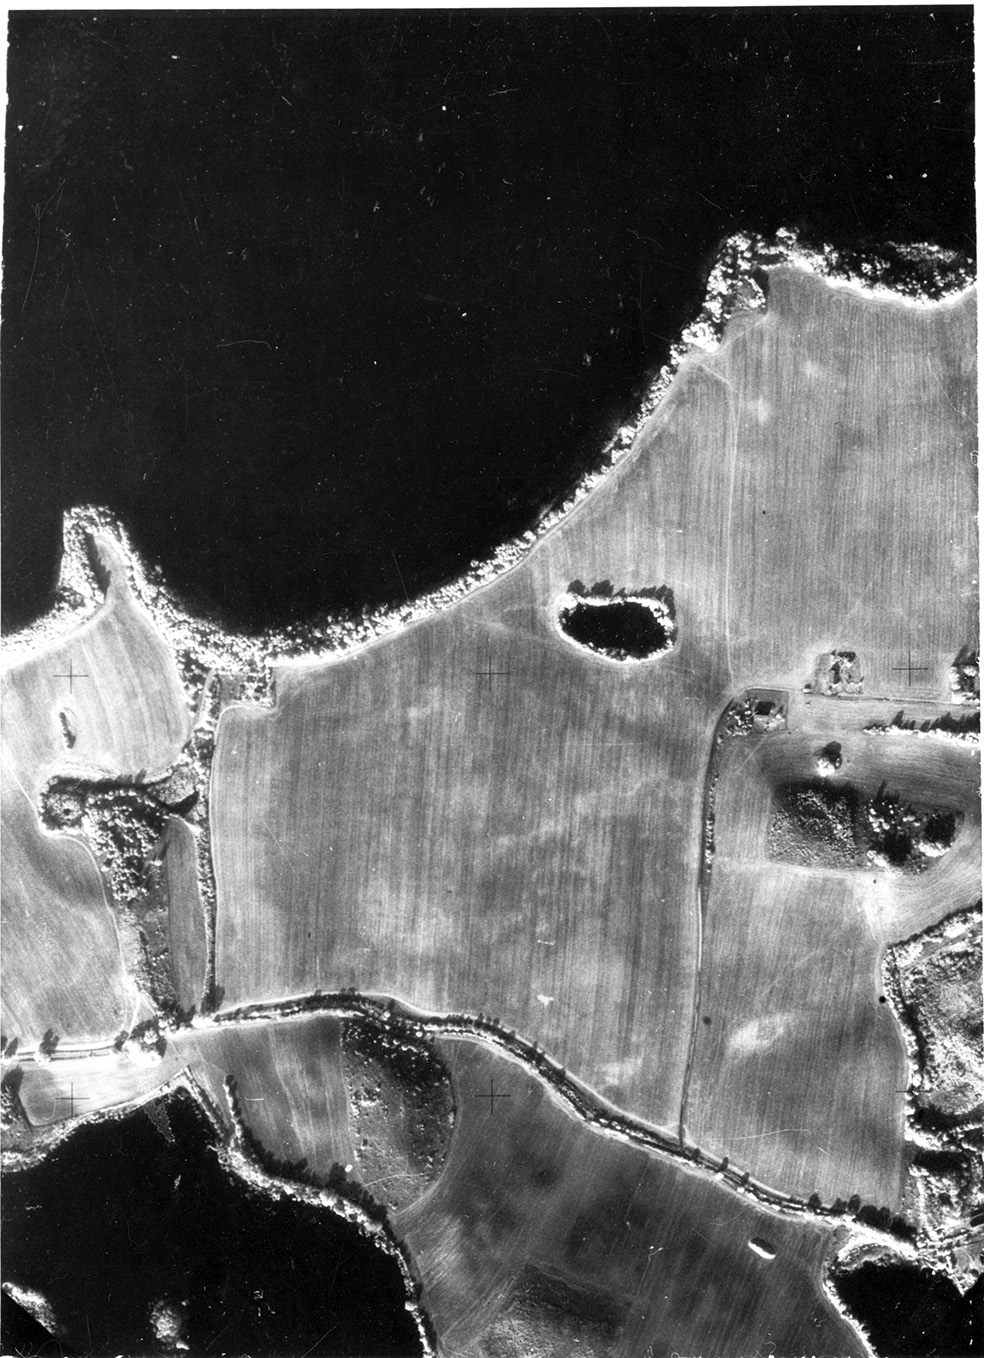 Wesensee/Parsteiner See (Luftbild 25b)